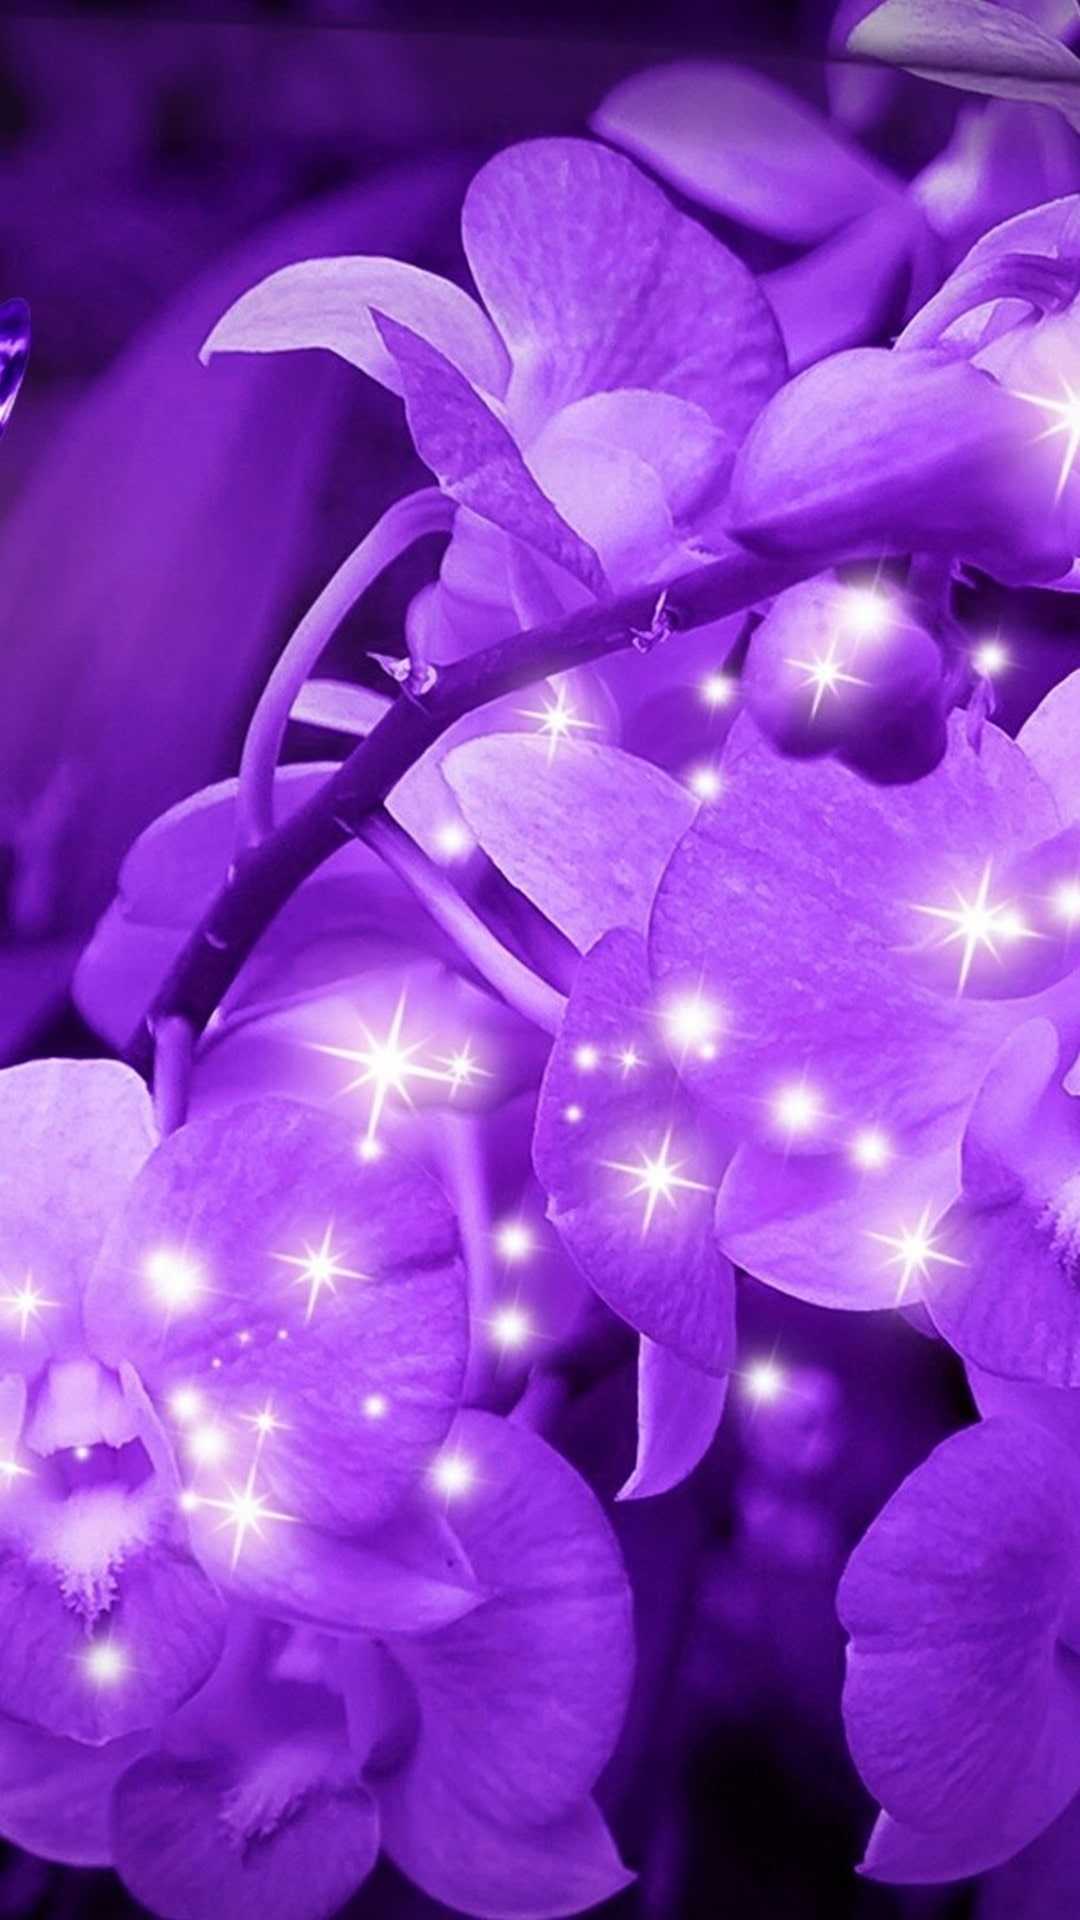 Purple orchid wallpaper hd - Flower, beautiful